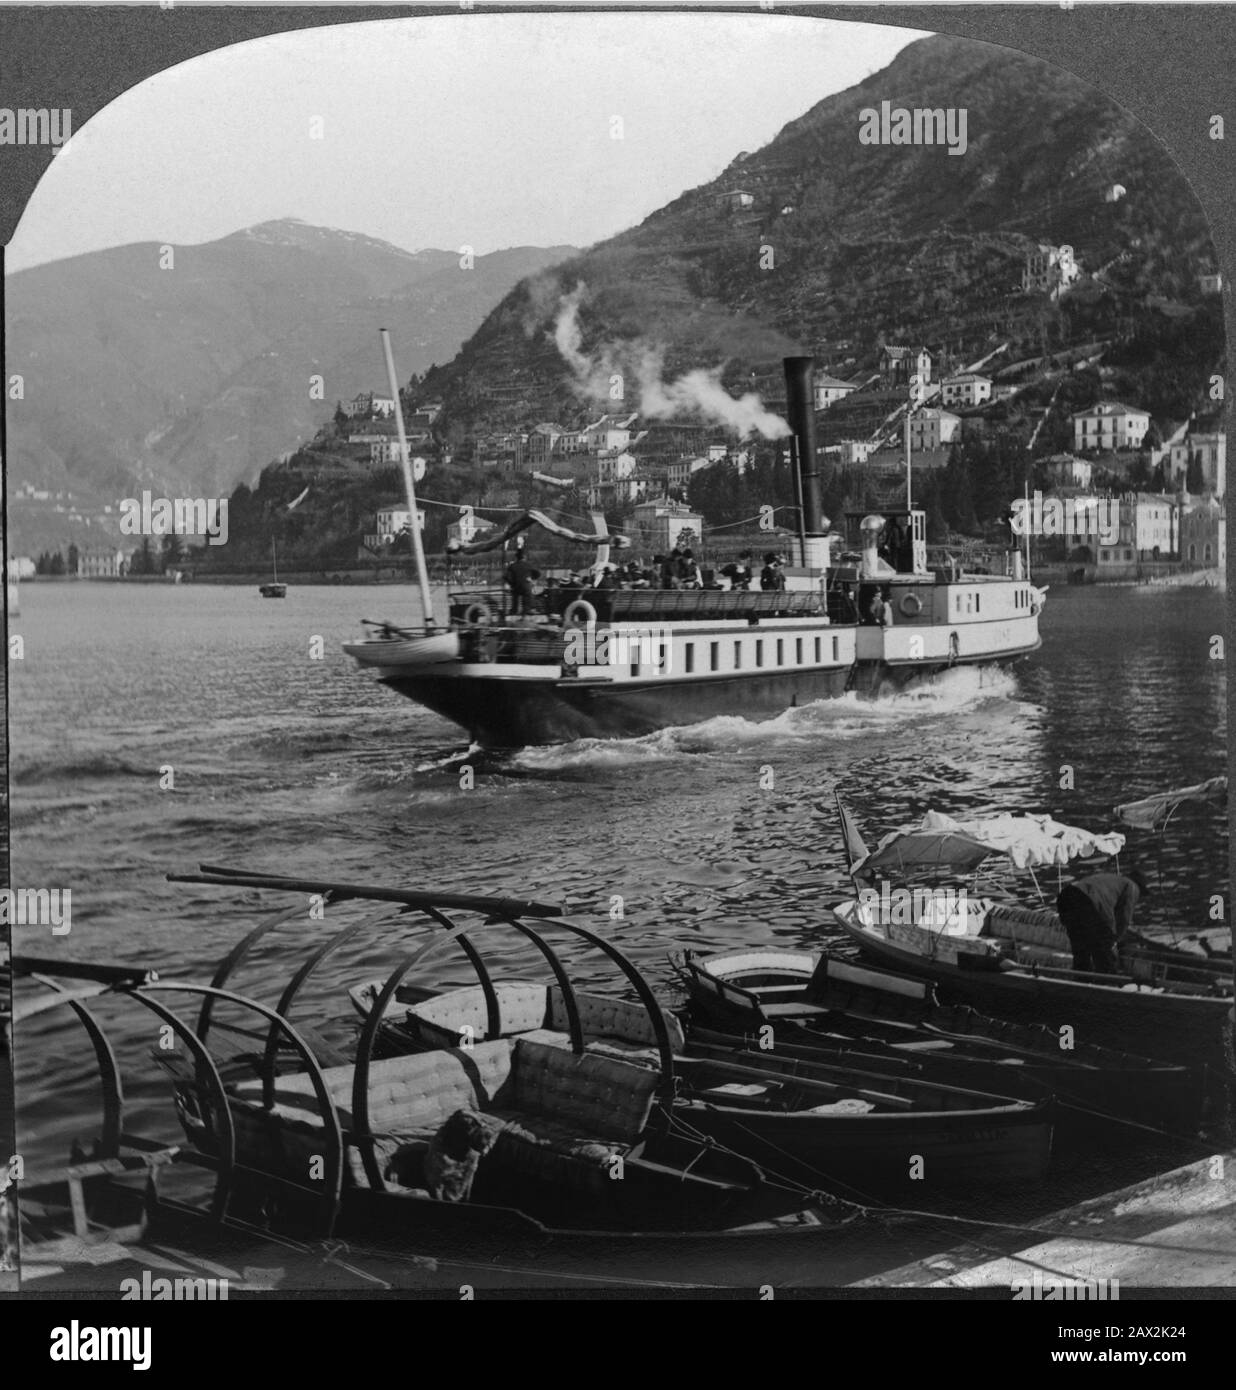 1905 Ca, LAGO di COMO, ITALIEN: Der SEE und der umliegende Berg von der Landung . Foto von Keystone View Company, USA - ITALIA - FOTO STORICHE - GESCHICHTE - GEOGRAFIA - GEOGRAPHIE - SEE - BELLE EPOQUE - Traghetto - Vaporetto - Fährschiff - barca - Boot - montagna - Turisti - Touristen - turismo - Tourismus - - - - Archivio GBB Stockfoto